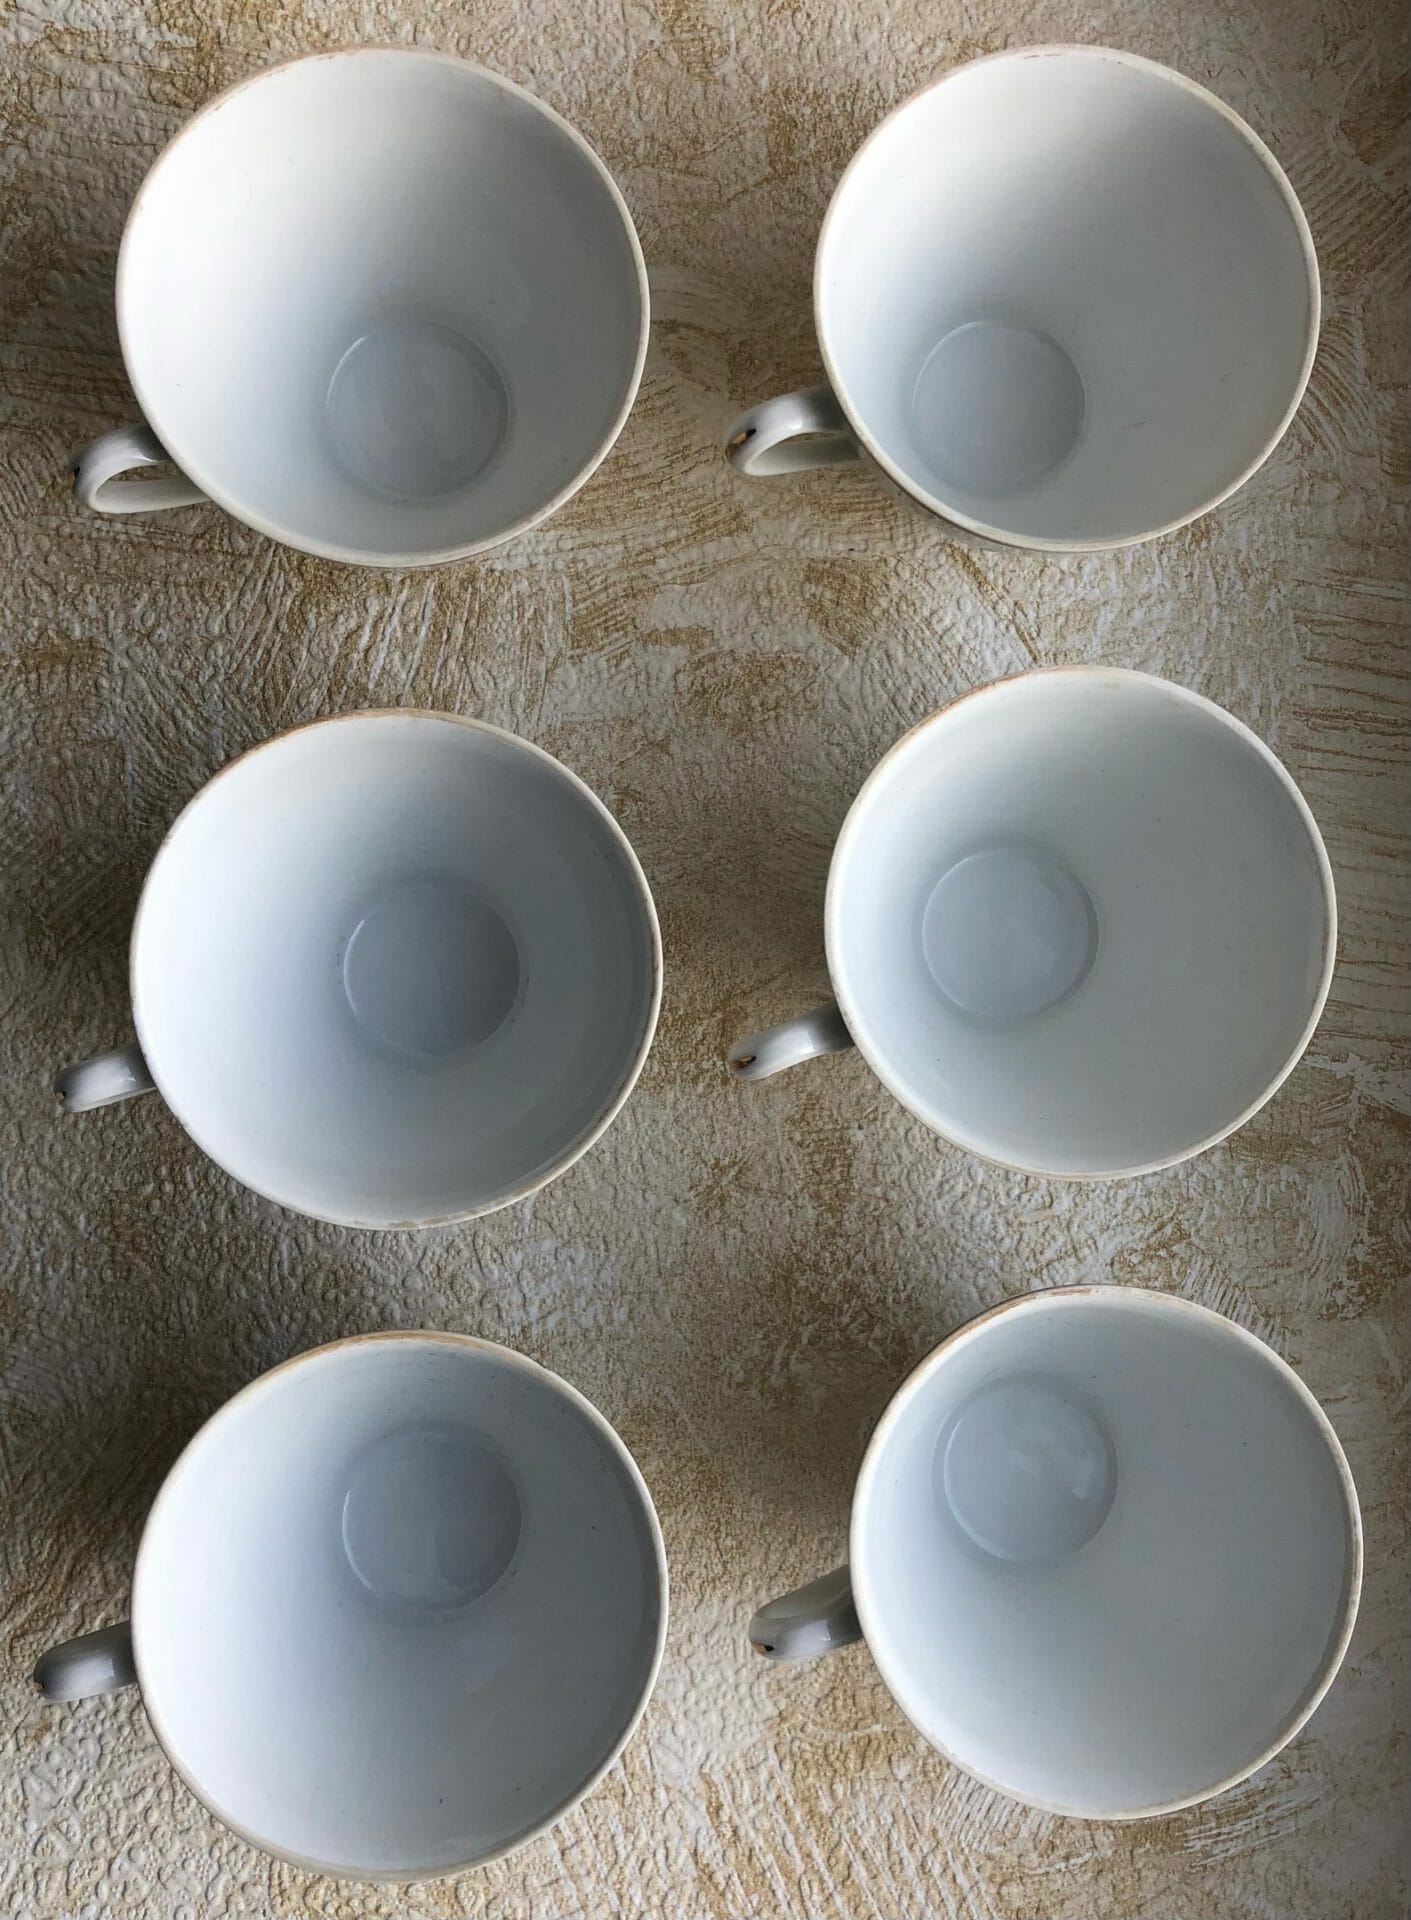 Soviet Porcelain , cups, service, Cmielow 1940s